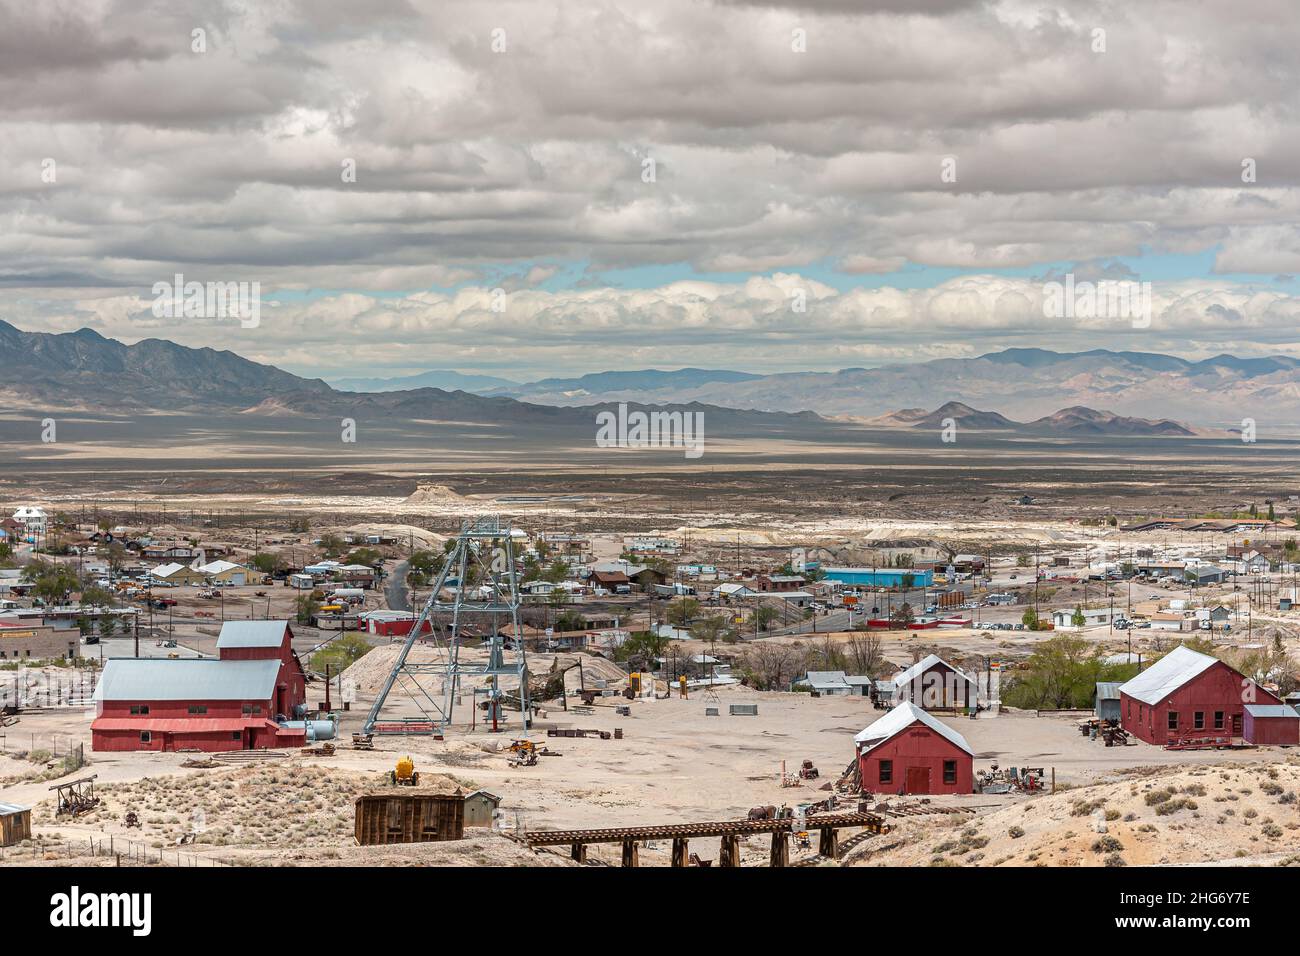 Tonopah, Nevada, US - 19 de mayo de 2011: Paisaje de extensión Amplia ciudad minera en desierto seco marrón con valle plano frente a las montañas oscuras bajo g espeso Foto de stock